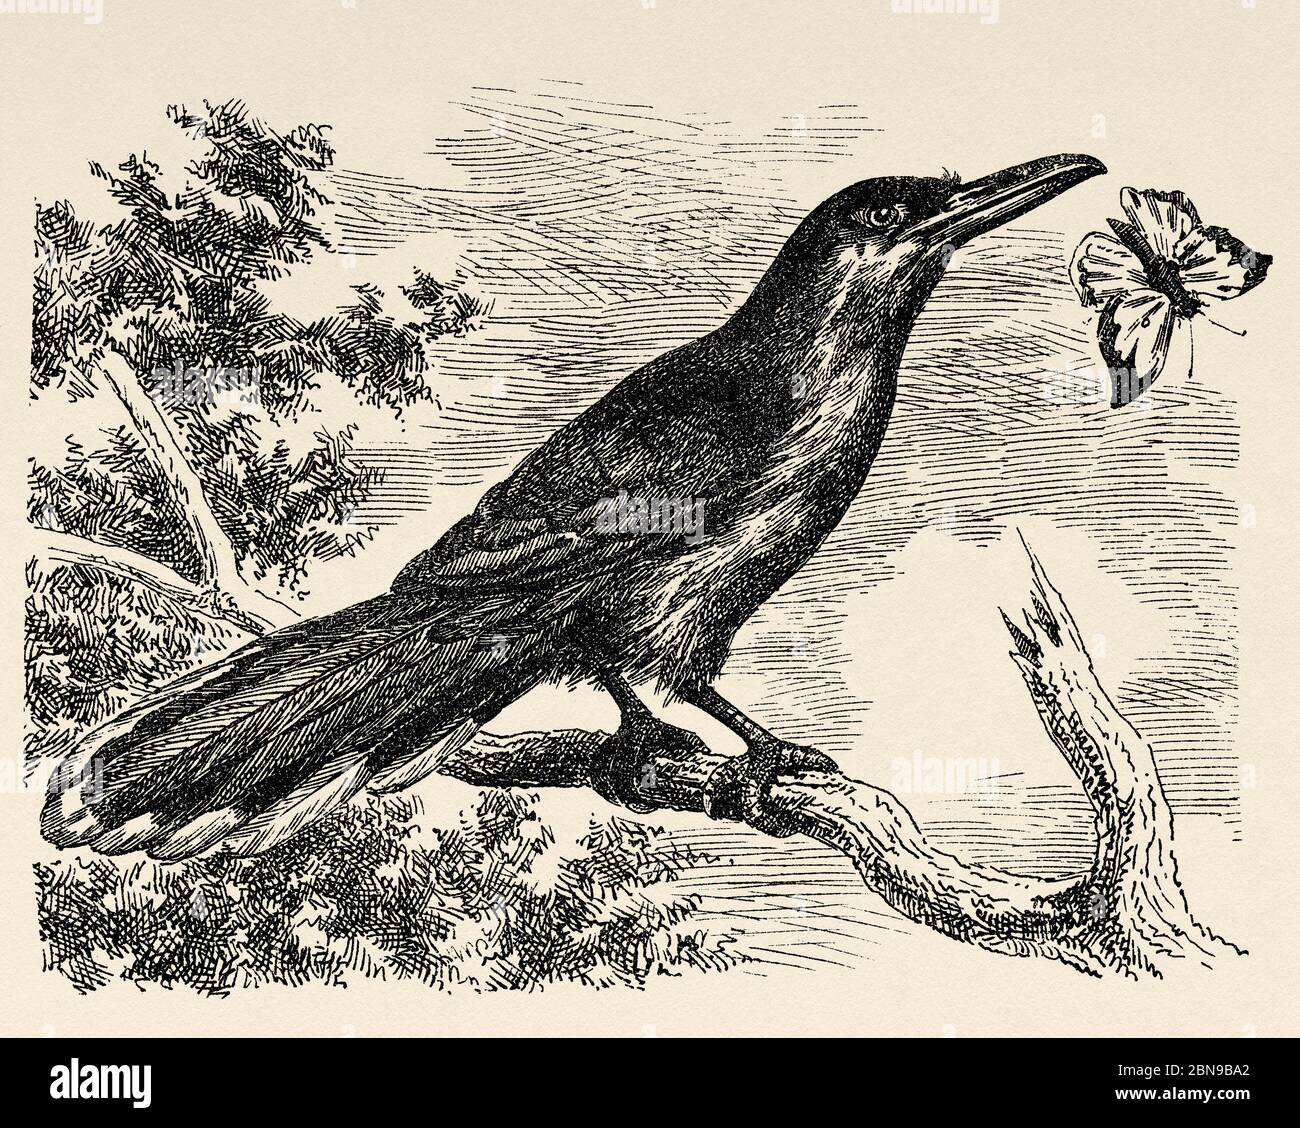 Saurotero. Ave trepadora americana, con un pico largo y delgado y una punta doblada. Antiguo grabado animal ilustración siglo 19 Foto de stock